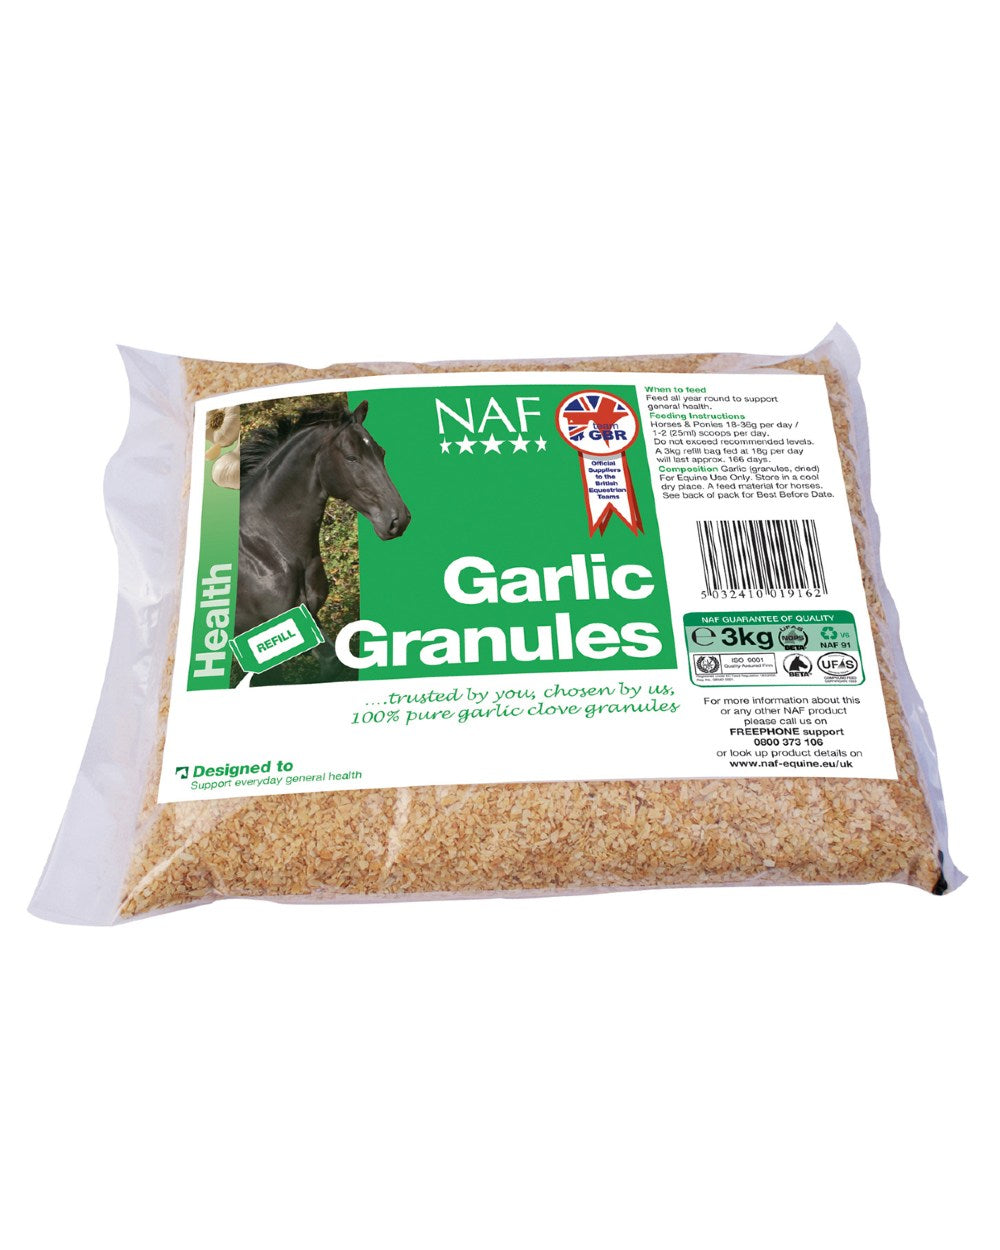 NAF Garlic Granules 3kg on white background